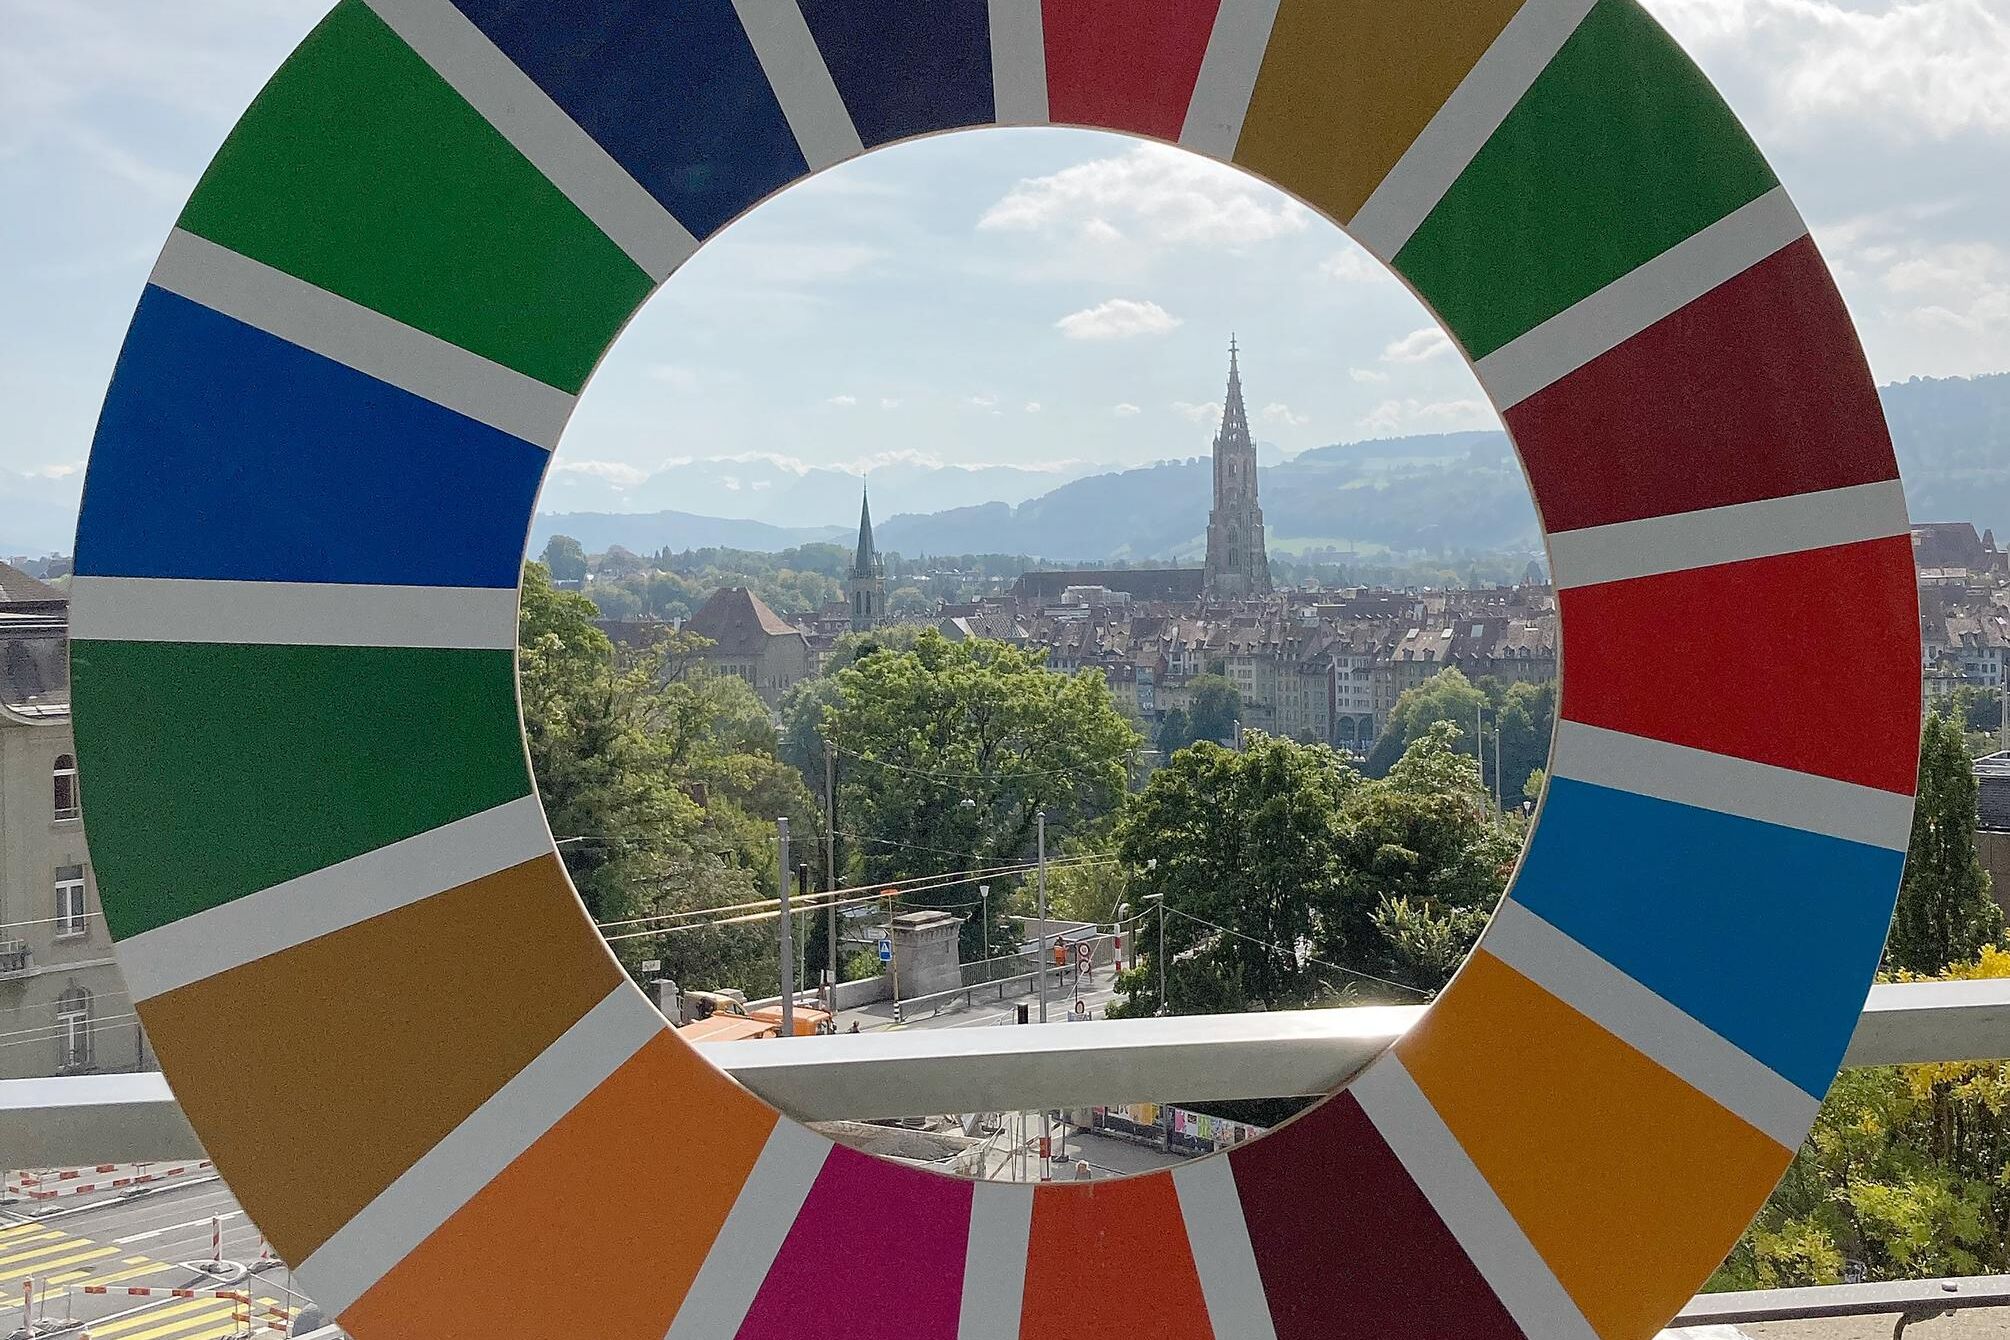 La città di Berna (Svizzera) vista attraverso il simbolo dell'Agenda 20230 delle Nazioni Unite